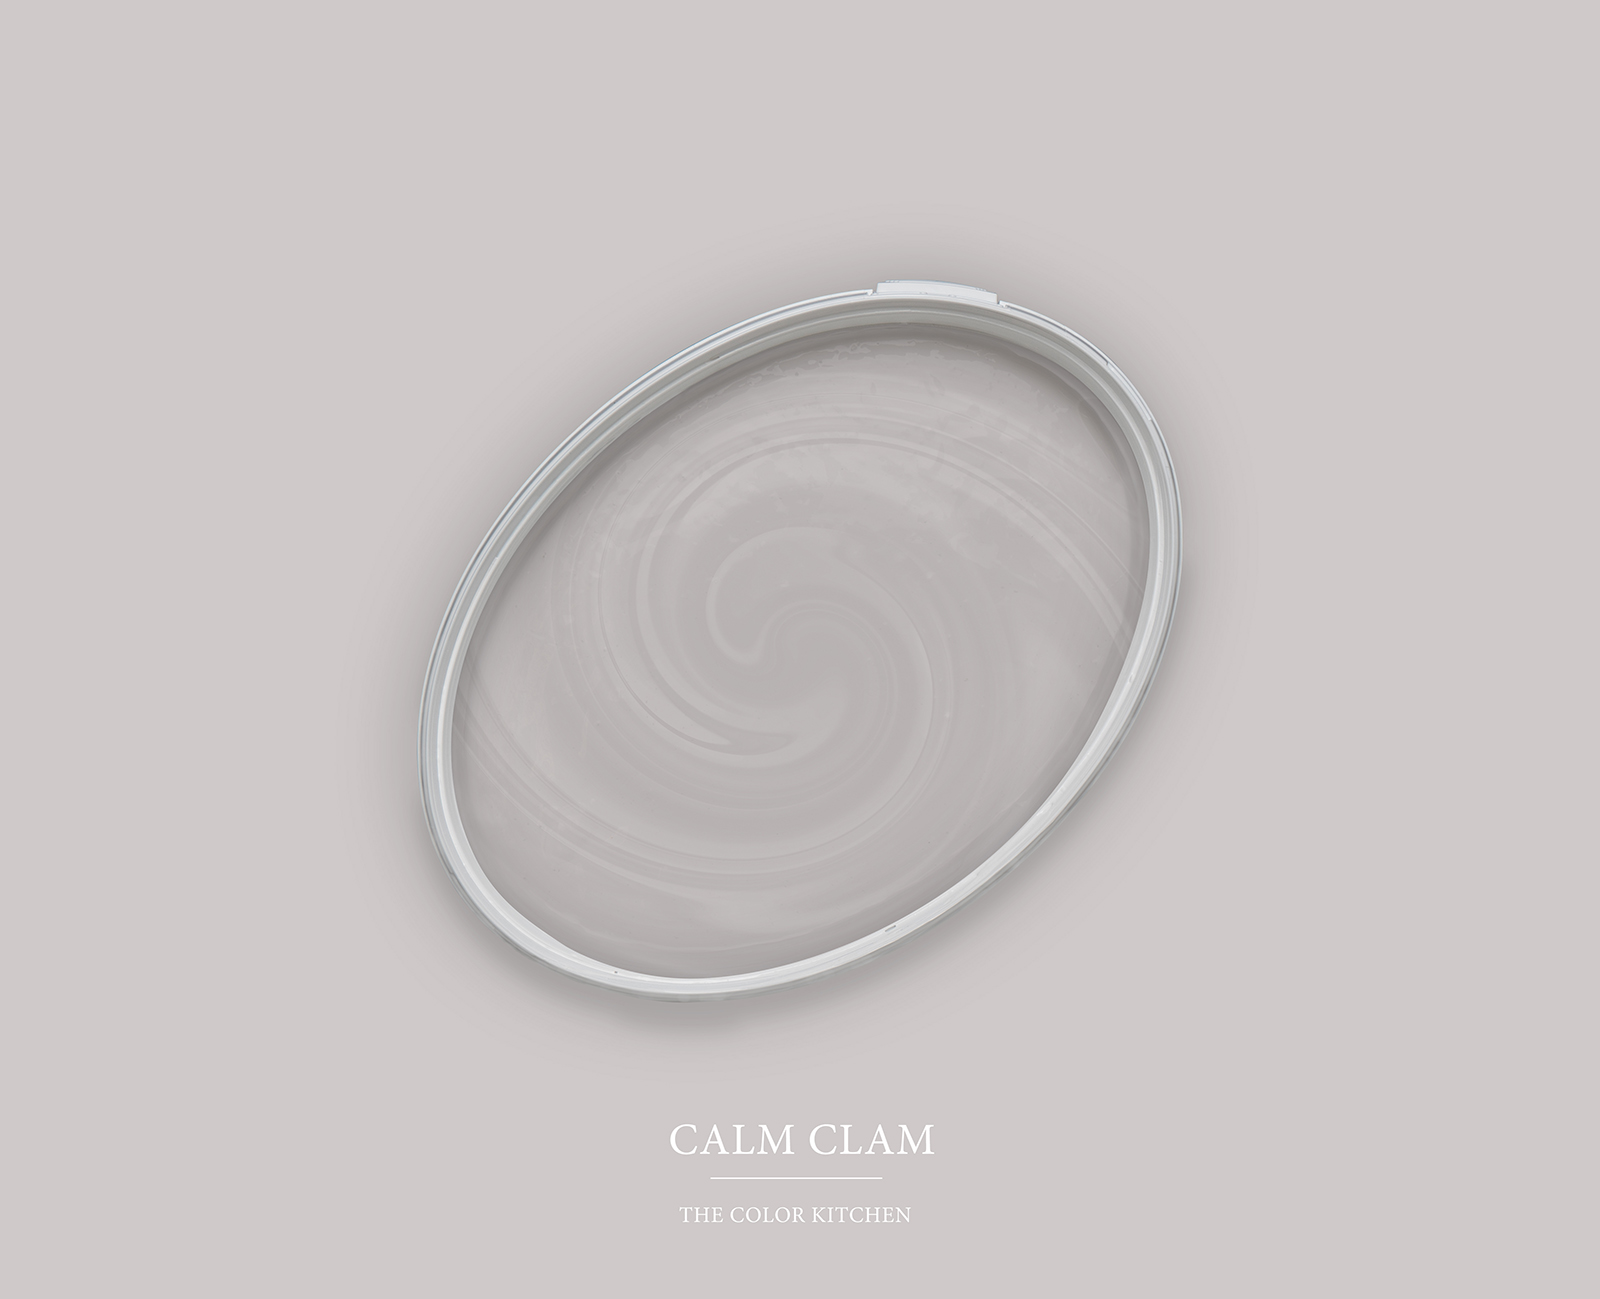 Muurverf TCK2000 »Calm Clam« in huiselijk grijs – 5,0 liter
